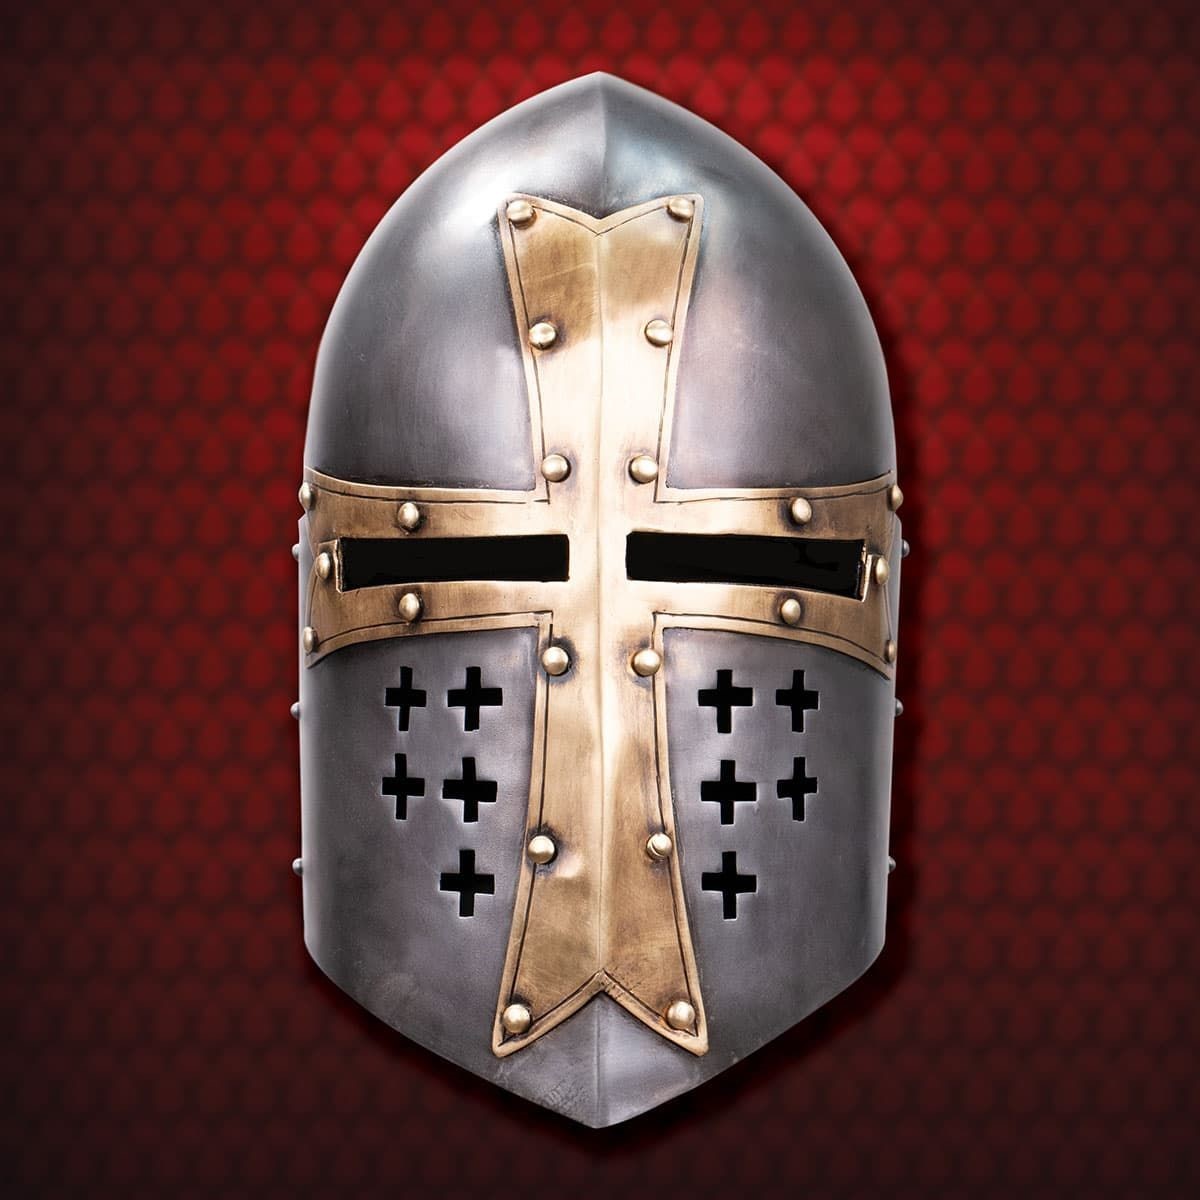 Red Deer Medieval Sugarloaf Crusader Helmet Knight's Templar Armor Helmet 